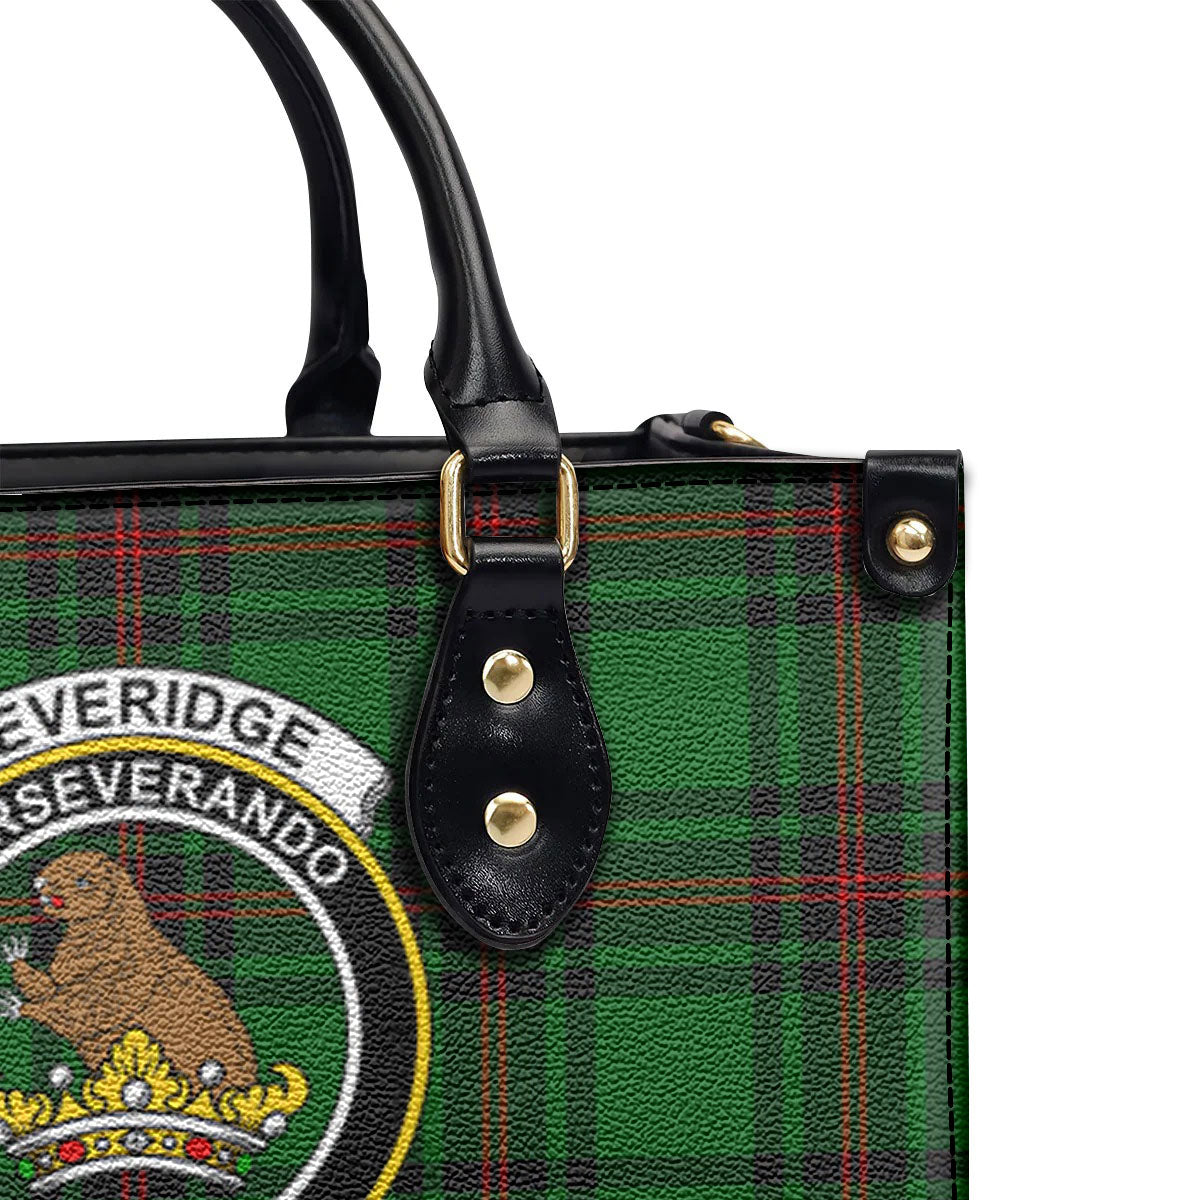 Beveridge Tartan Crest Leather Handbag